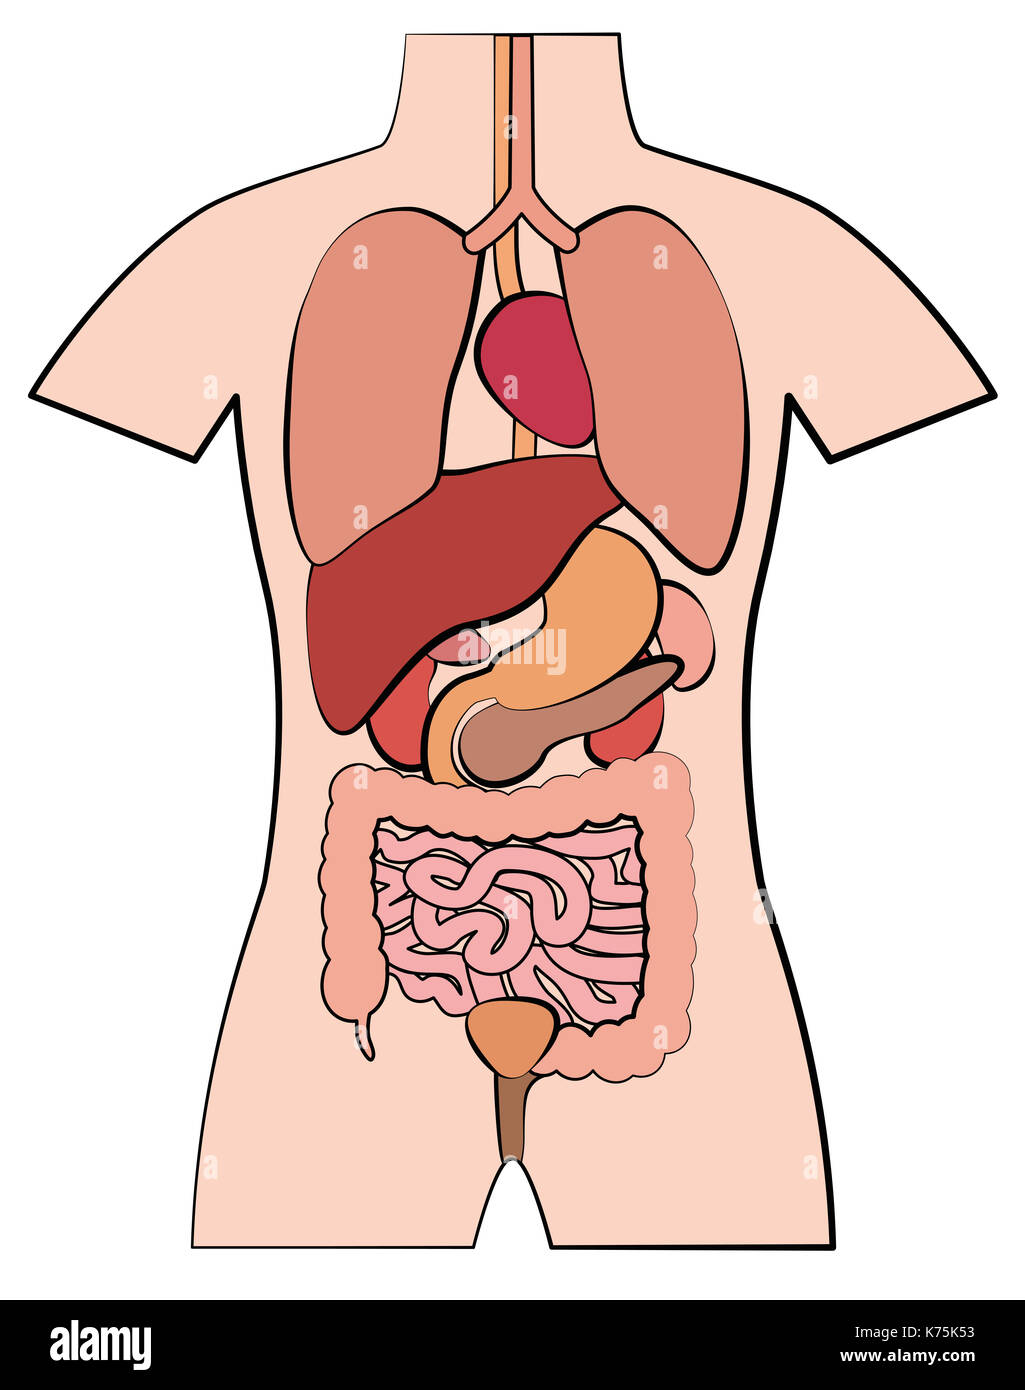 L'anatomie humaine, les organes internes - ébauche de plan style bande dessinée illustration sur fond blanc. Banque D'Images